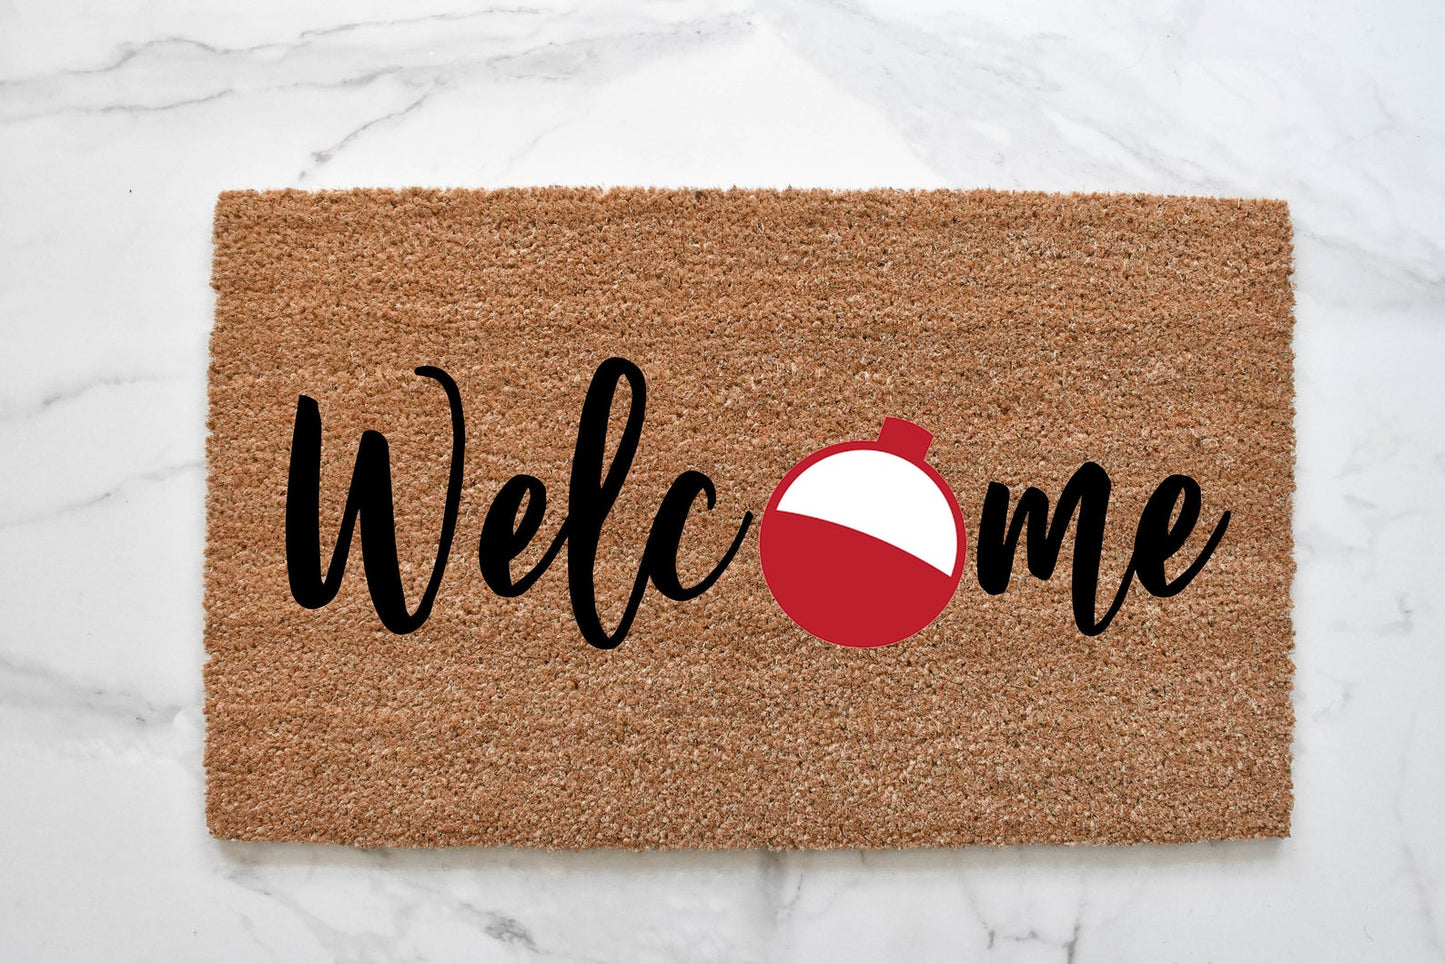 Welcome + Bobber Doormat